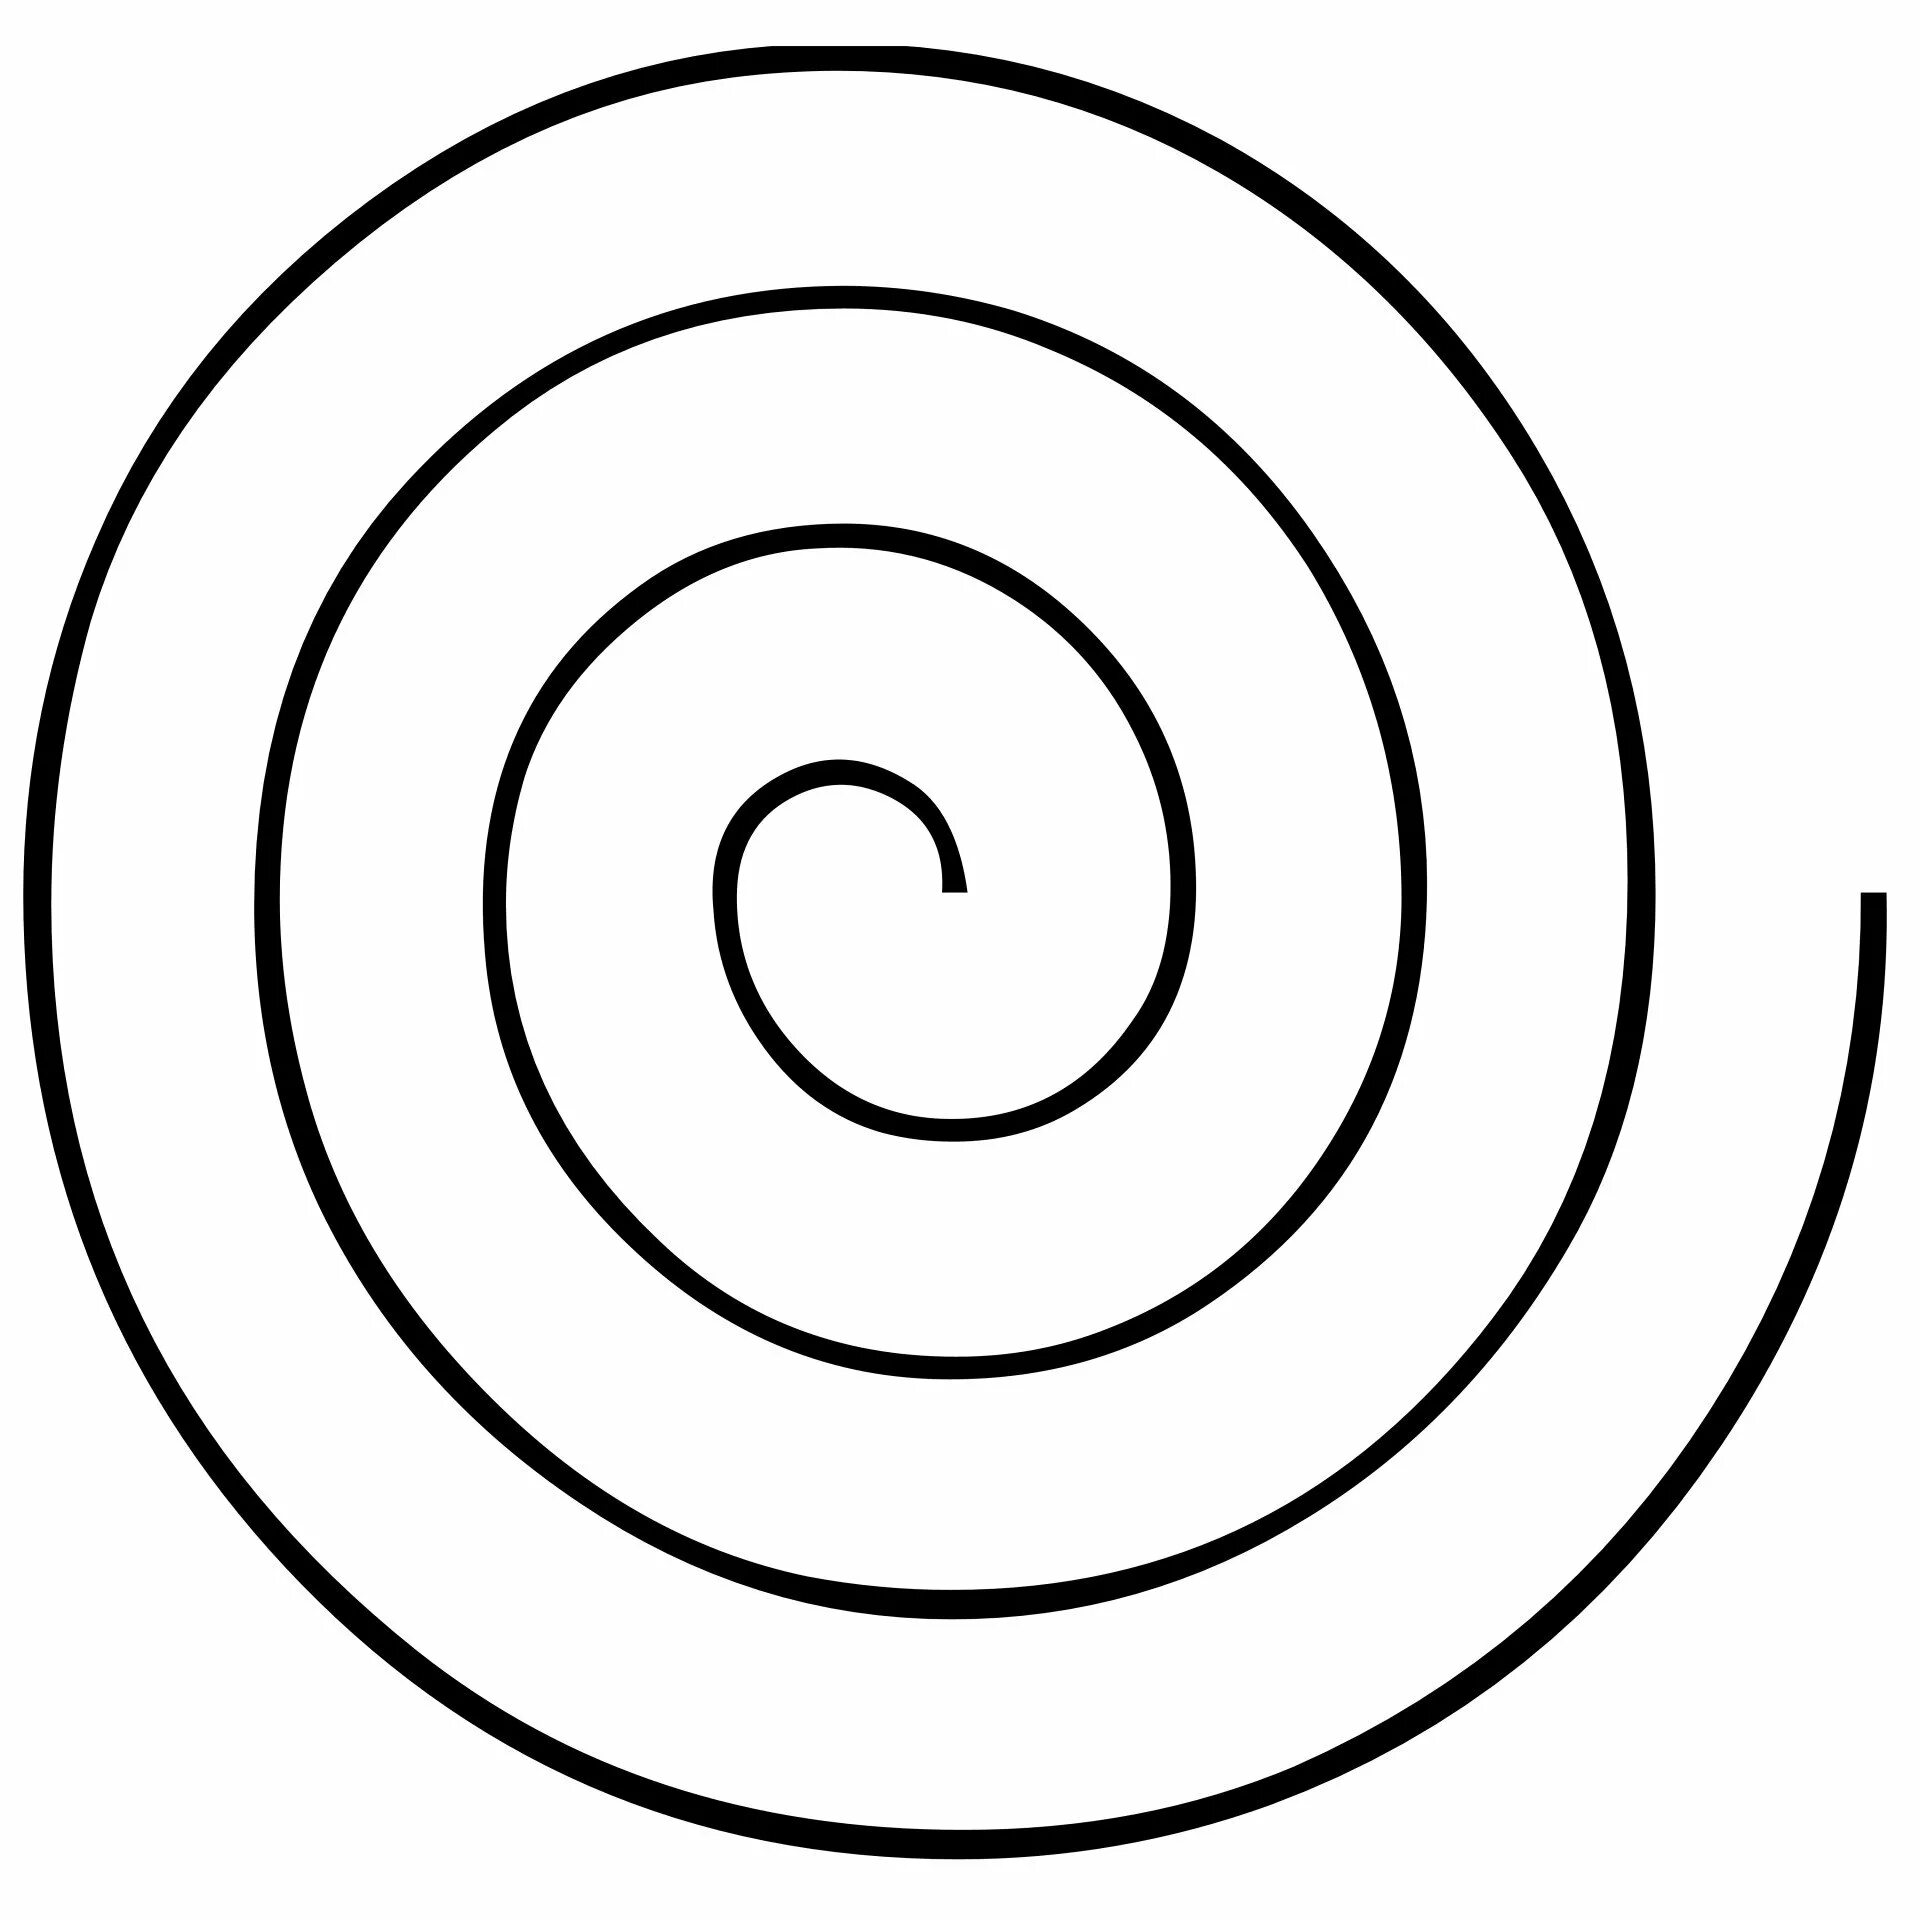 Circular pattern spiral #2